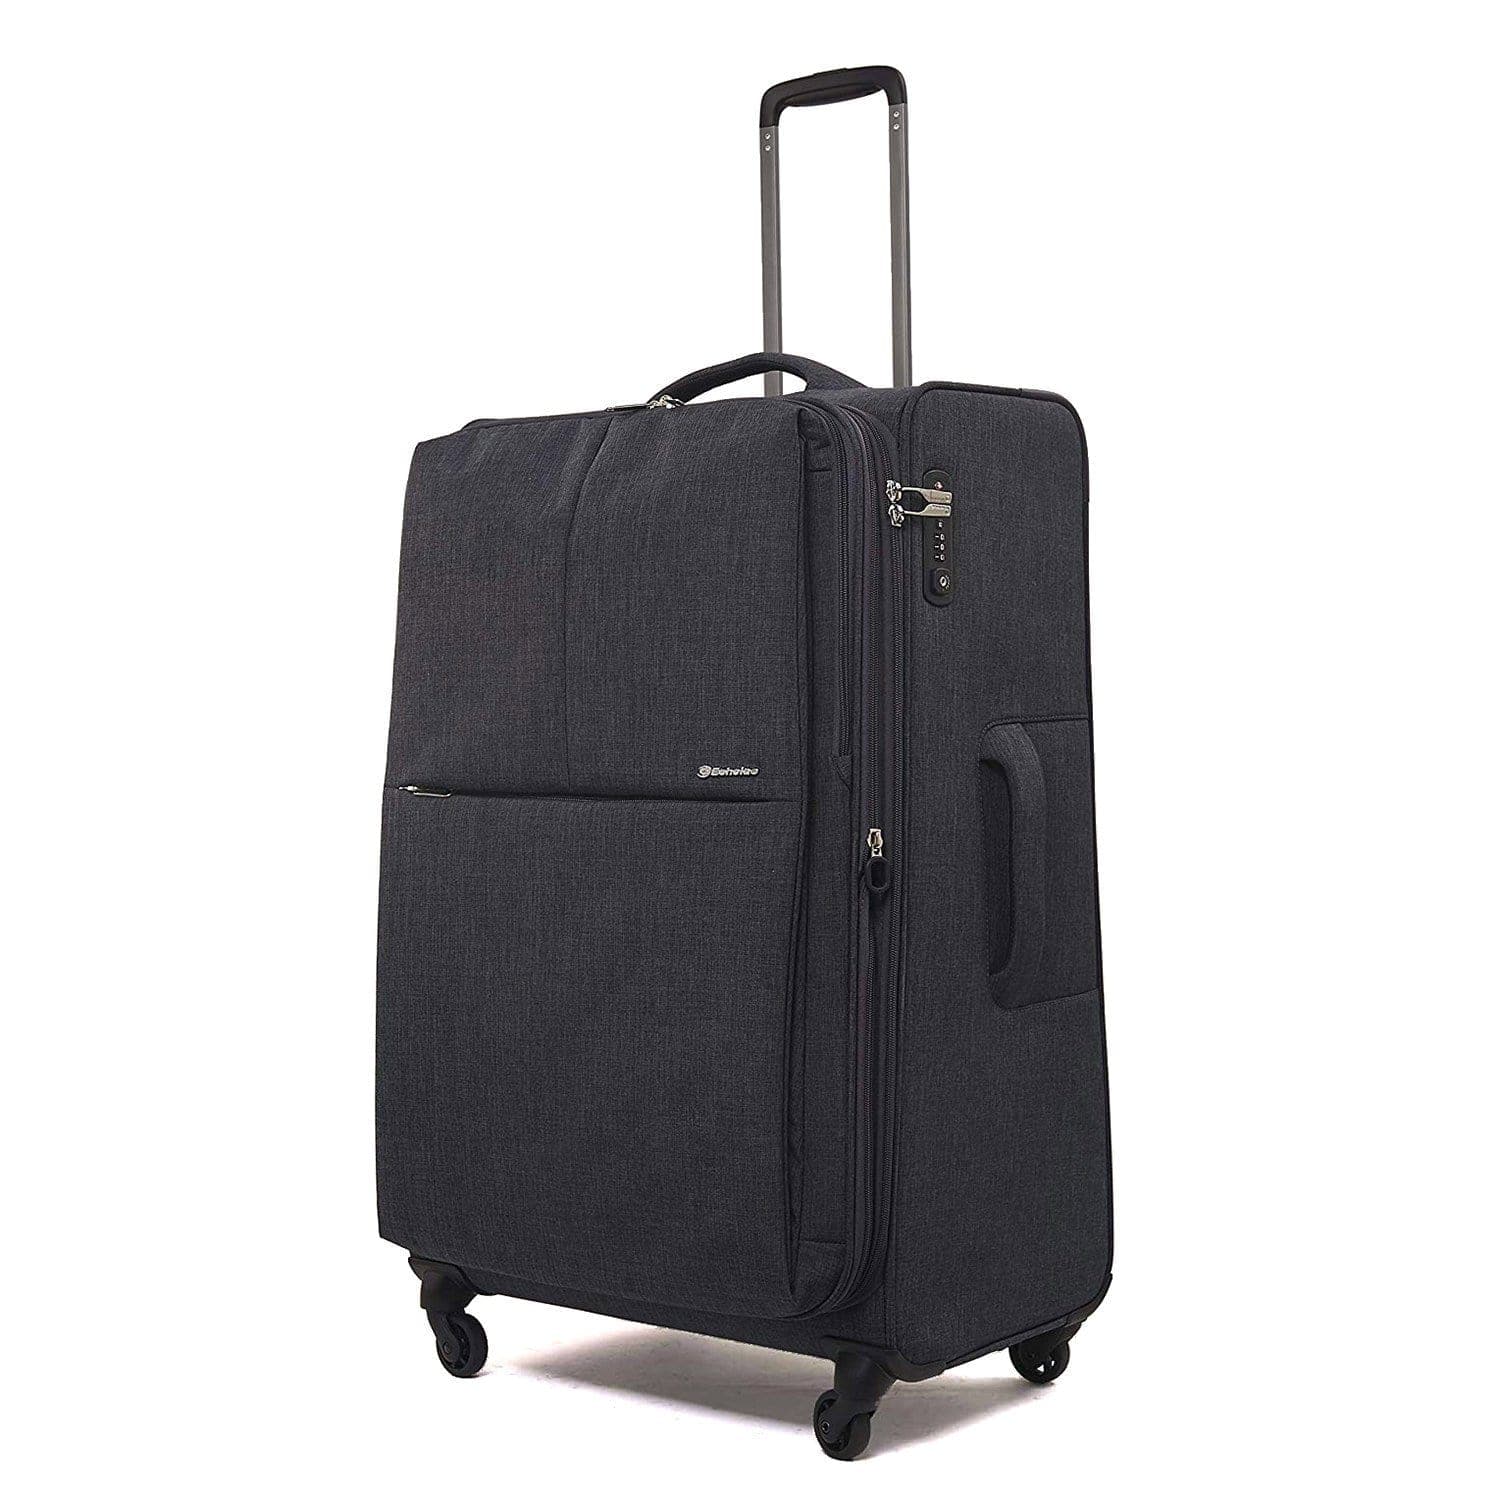 عربة حقائب سفر ايكولاك جيميني 20 بوصة 4 عجلات مزدوجة رمادي غامق - CT807 رمادي غامق 20